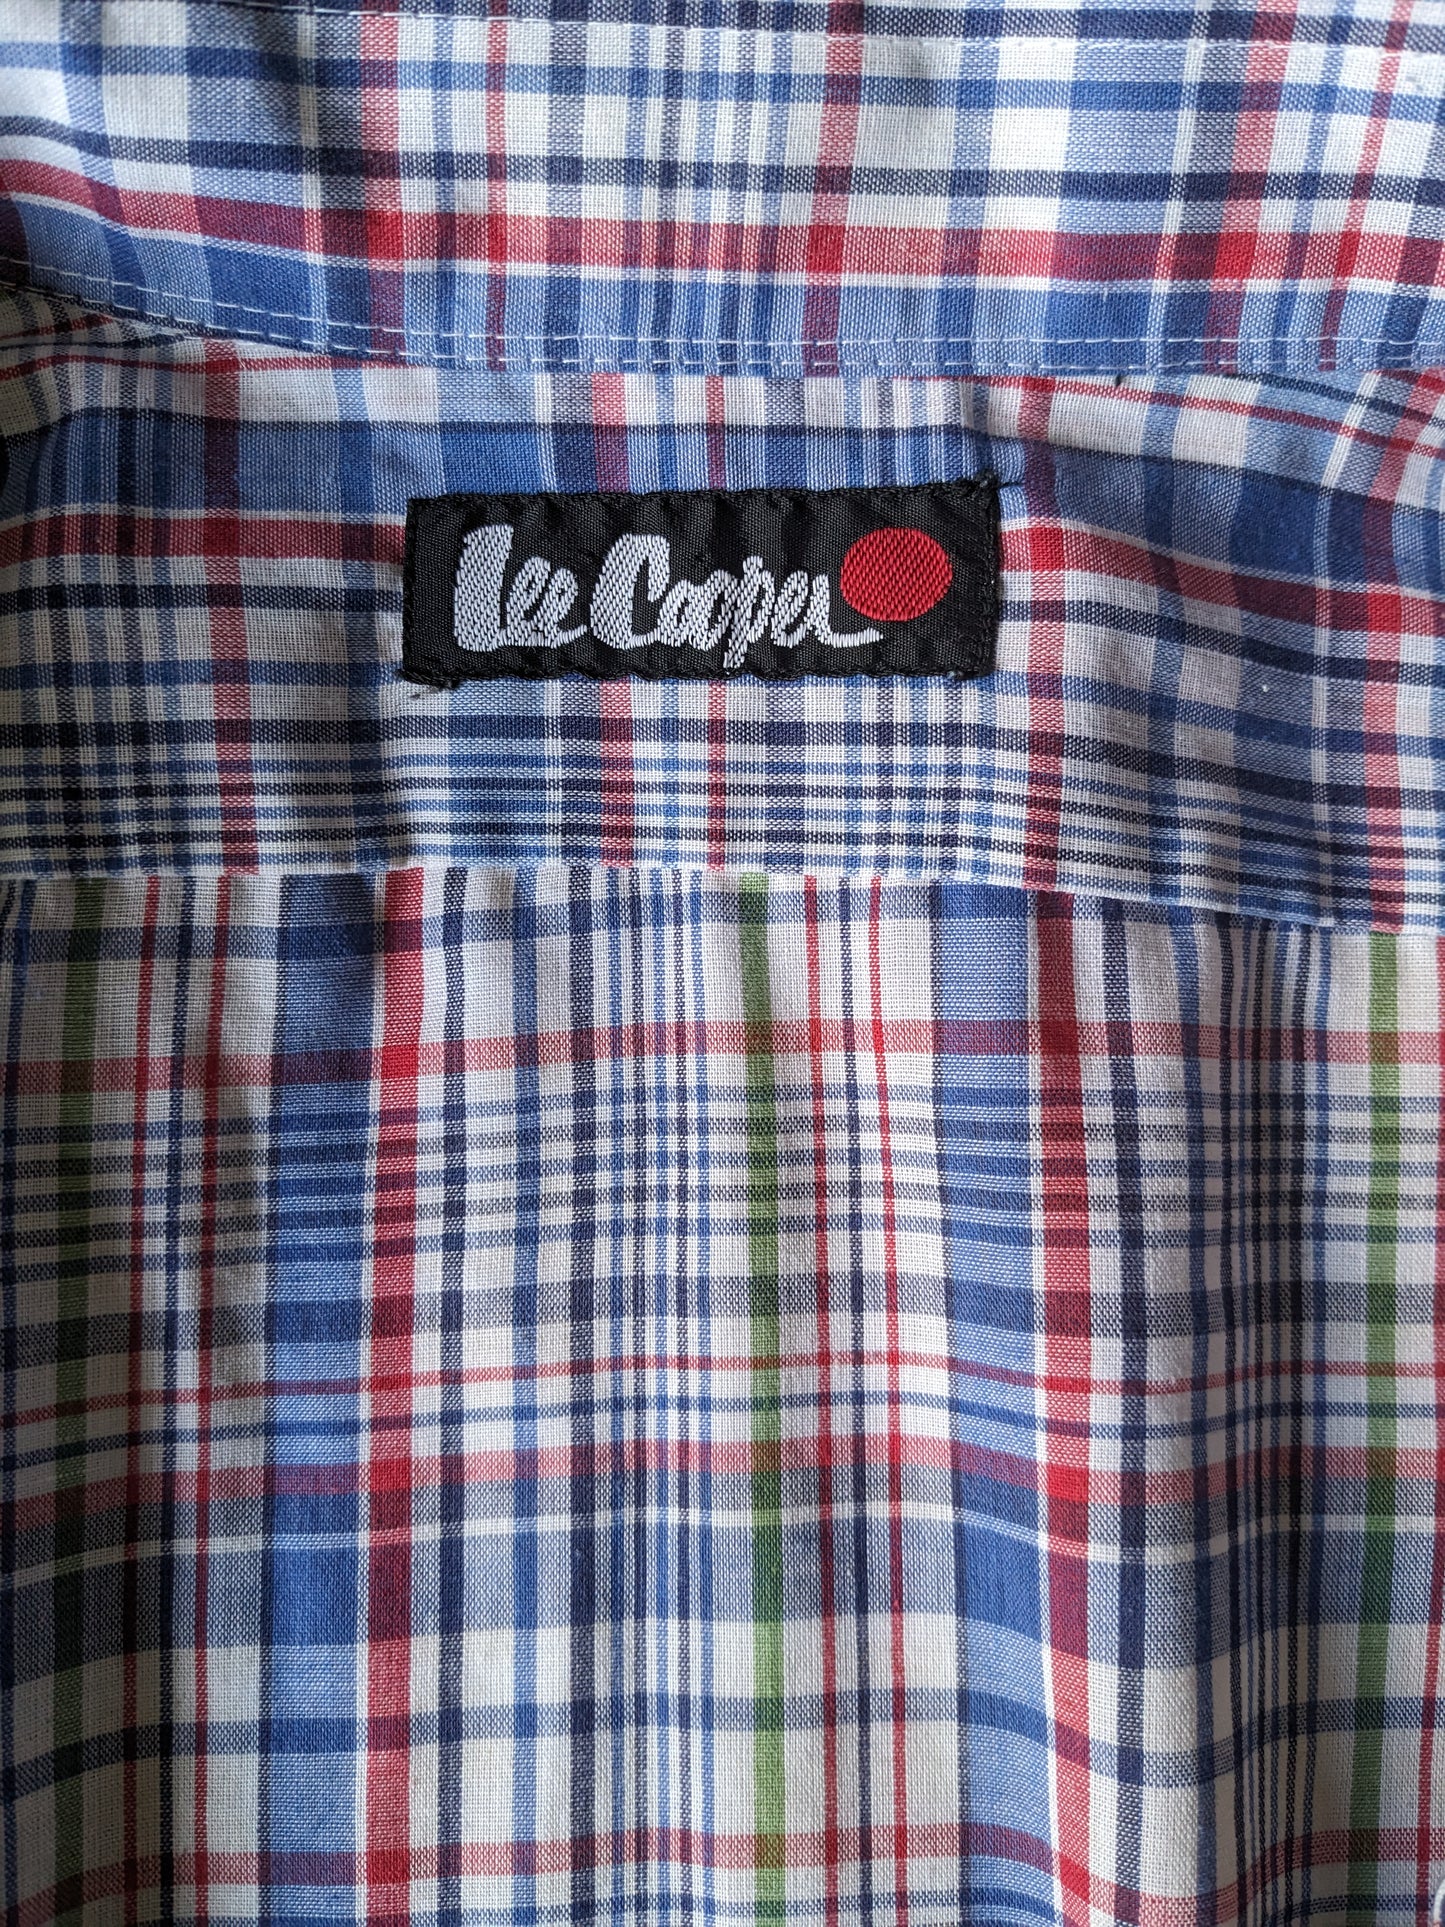 Chemise Lee Cooper de Vintage des années 70 avec collier. Blue rouge vert à carreaux. Taille L.